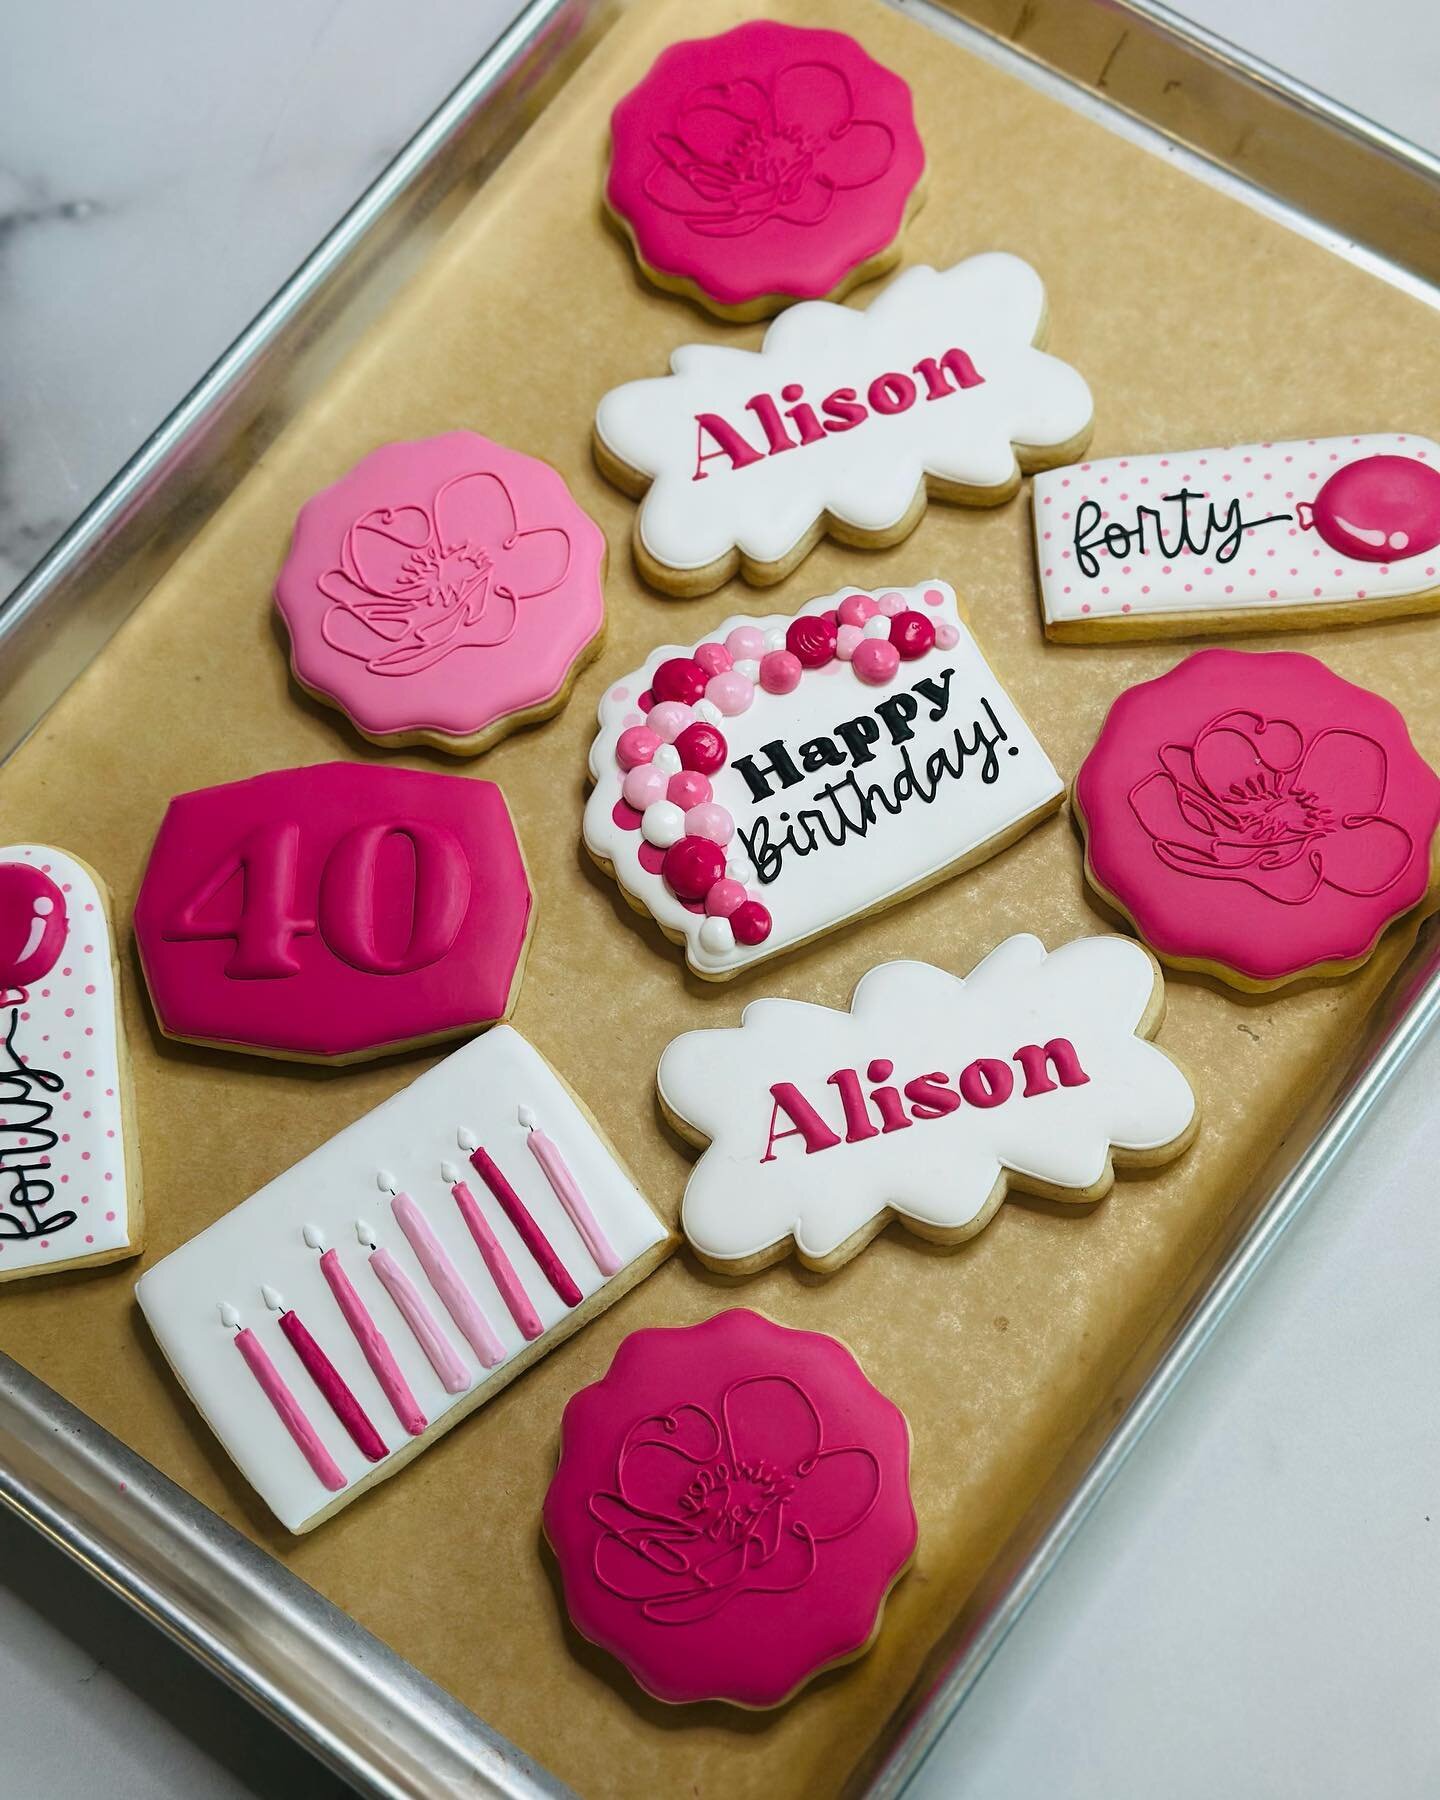 Happy 40th birthday to Alison! SugarCookies #RoyalIcing #CustomCookies #HandDecoratedCookies #DecoratedCookies #DecoratedSugarCookies #CookieArt #EdibleArt #CookiesOfInstagram #CookiesOfIG #WillowGlen #SanJose #CharmingWillowGlen #BirthdayCookies #Pi